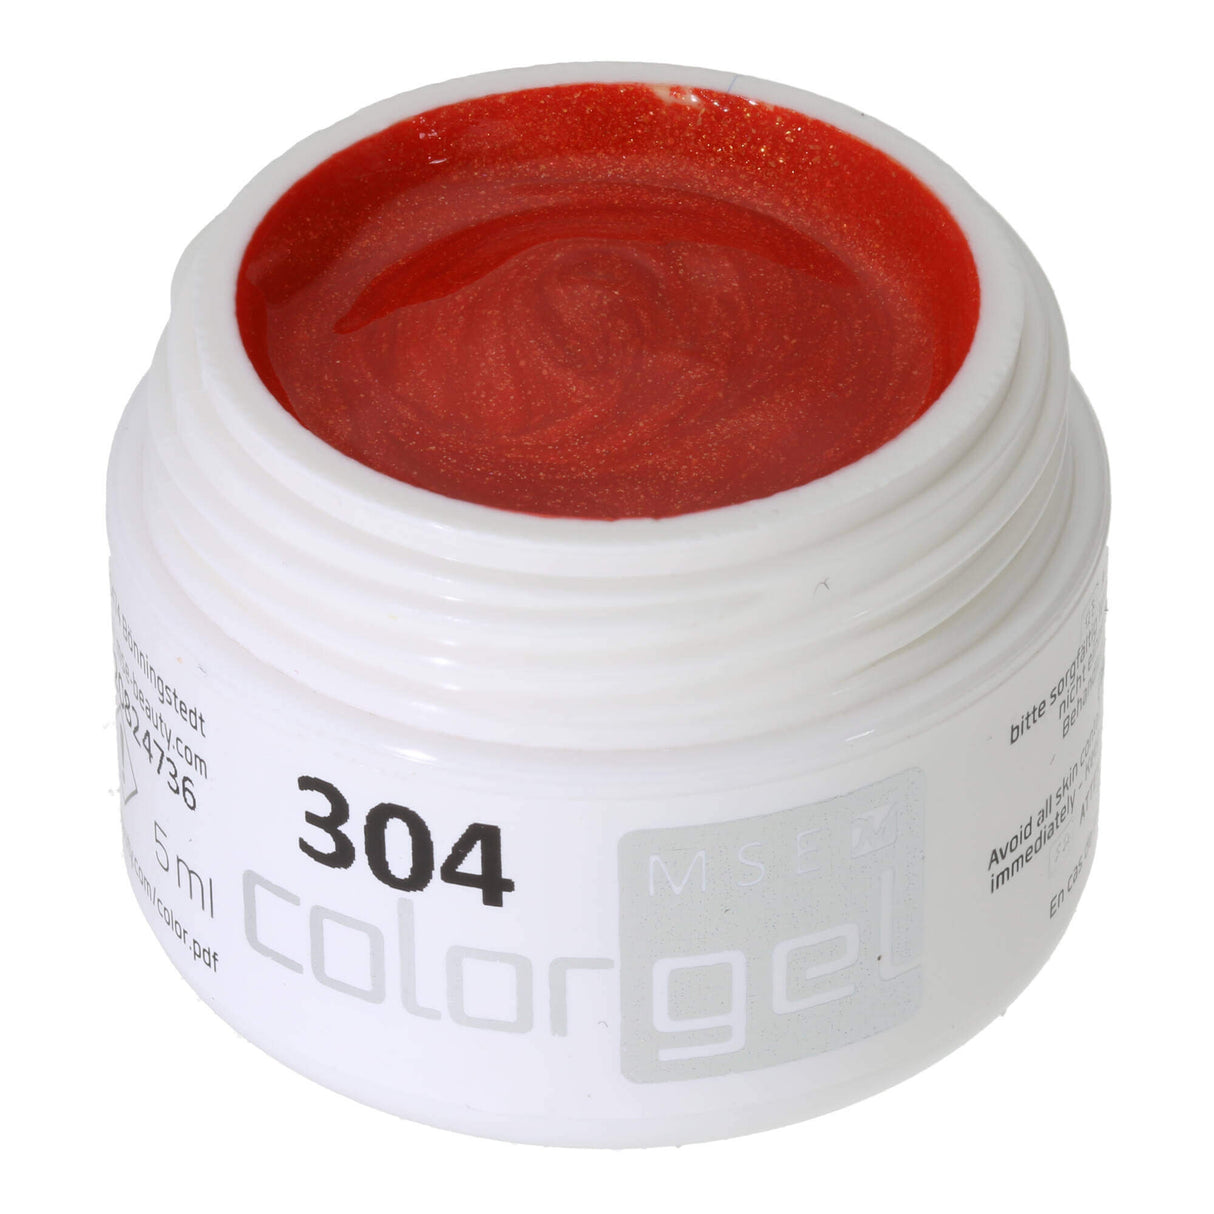 #304 Premium-EFFEKT Color Gel 5ml Kräftiges Rotorange mit Goldeffekt